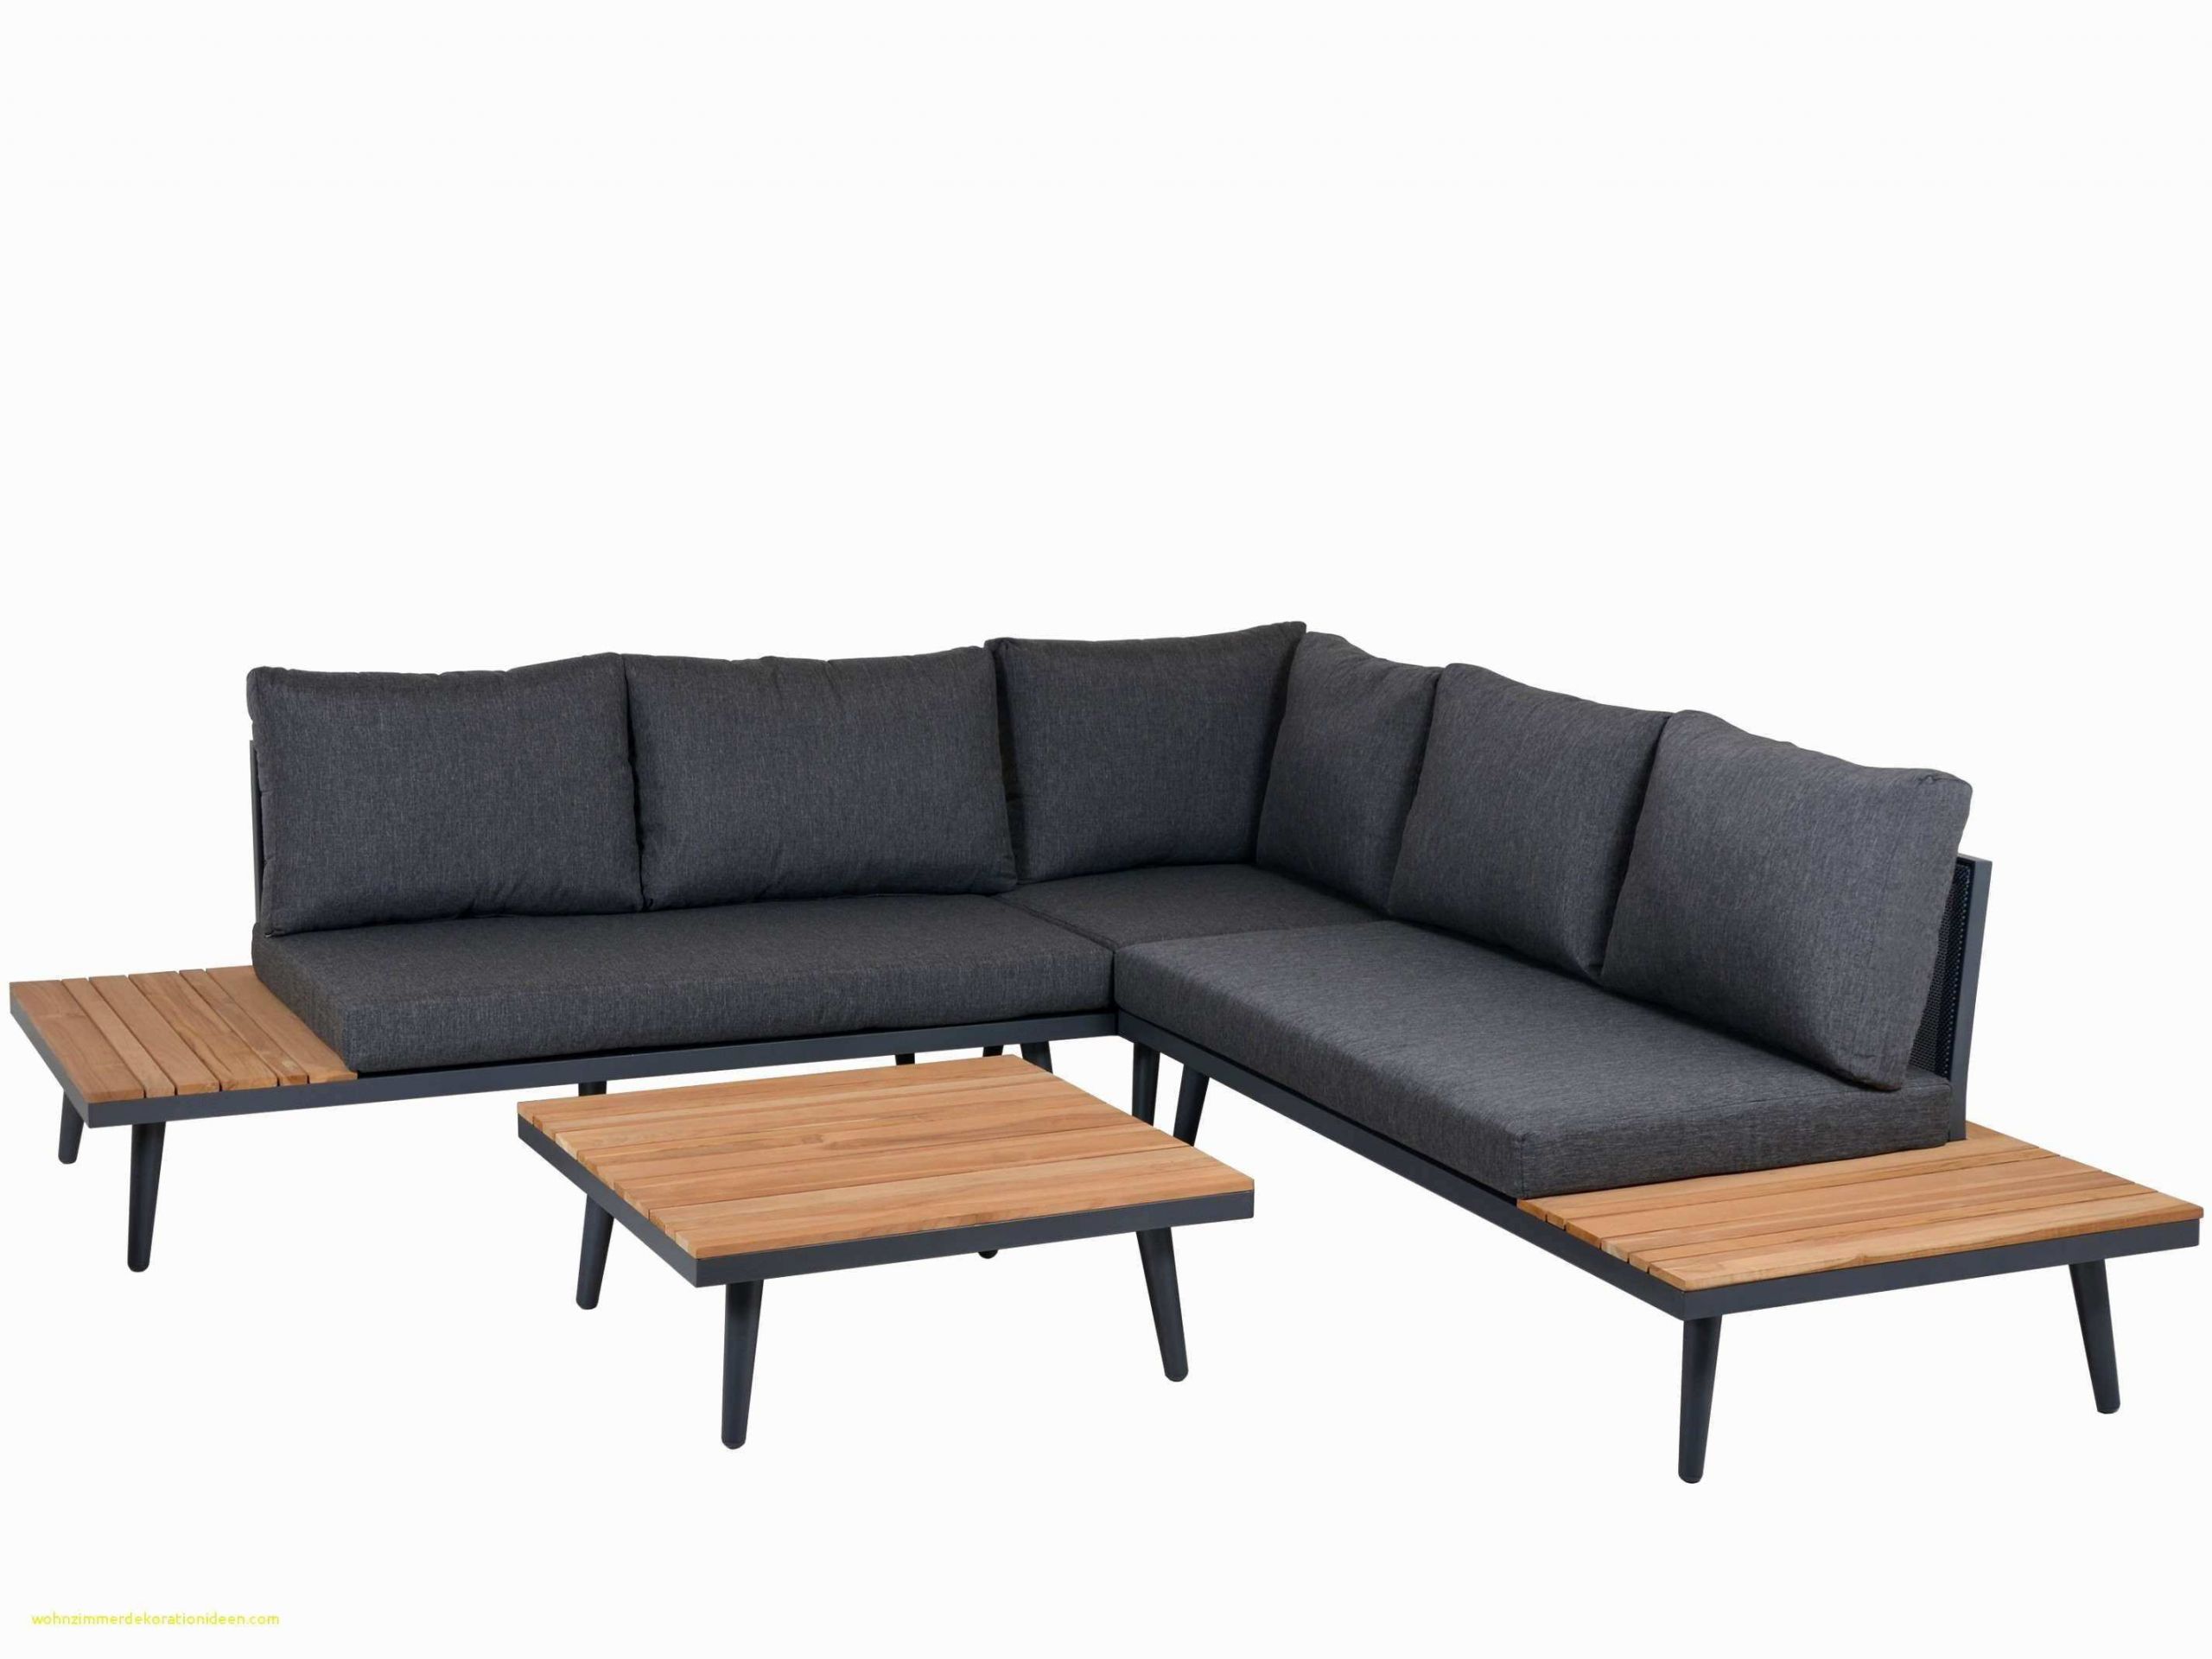 Garten Lounge sofa Schön Bett 1 80 Latest Bett 1 80 with Bett 1 80 Bett 1 80 with